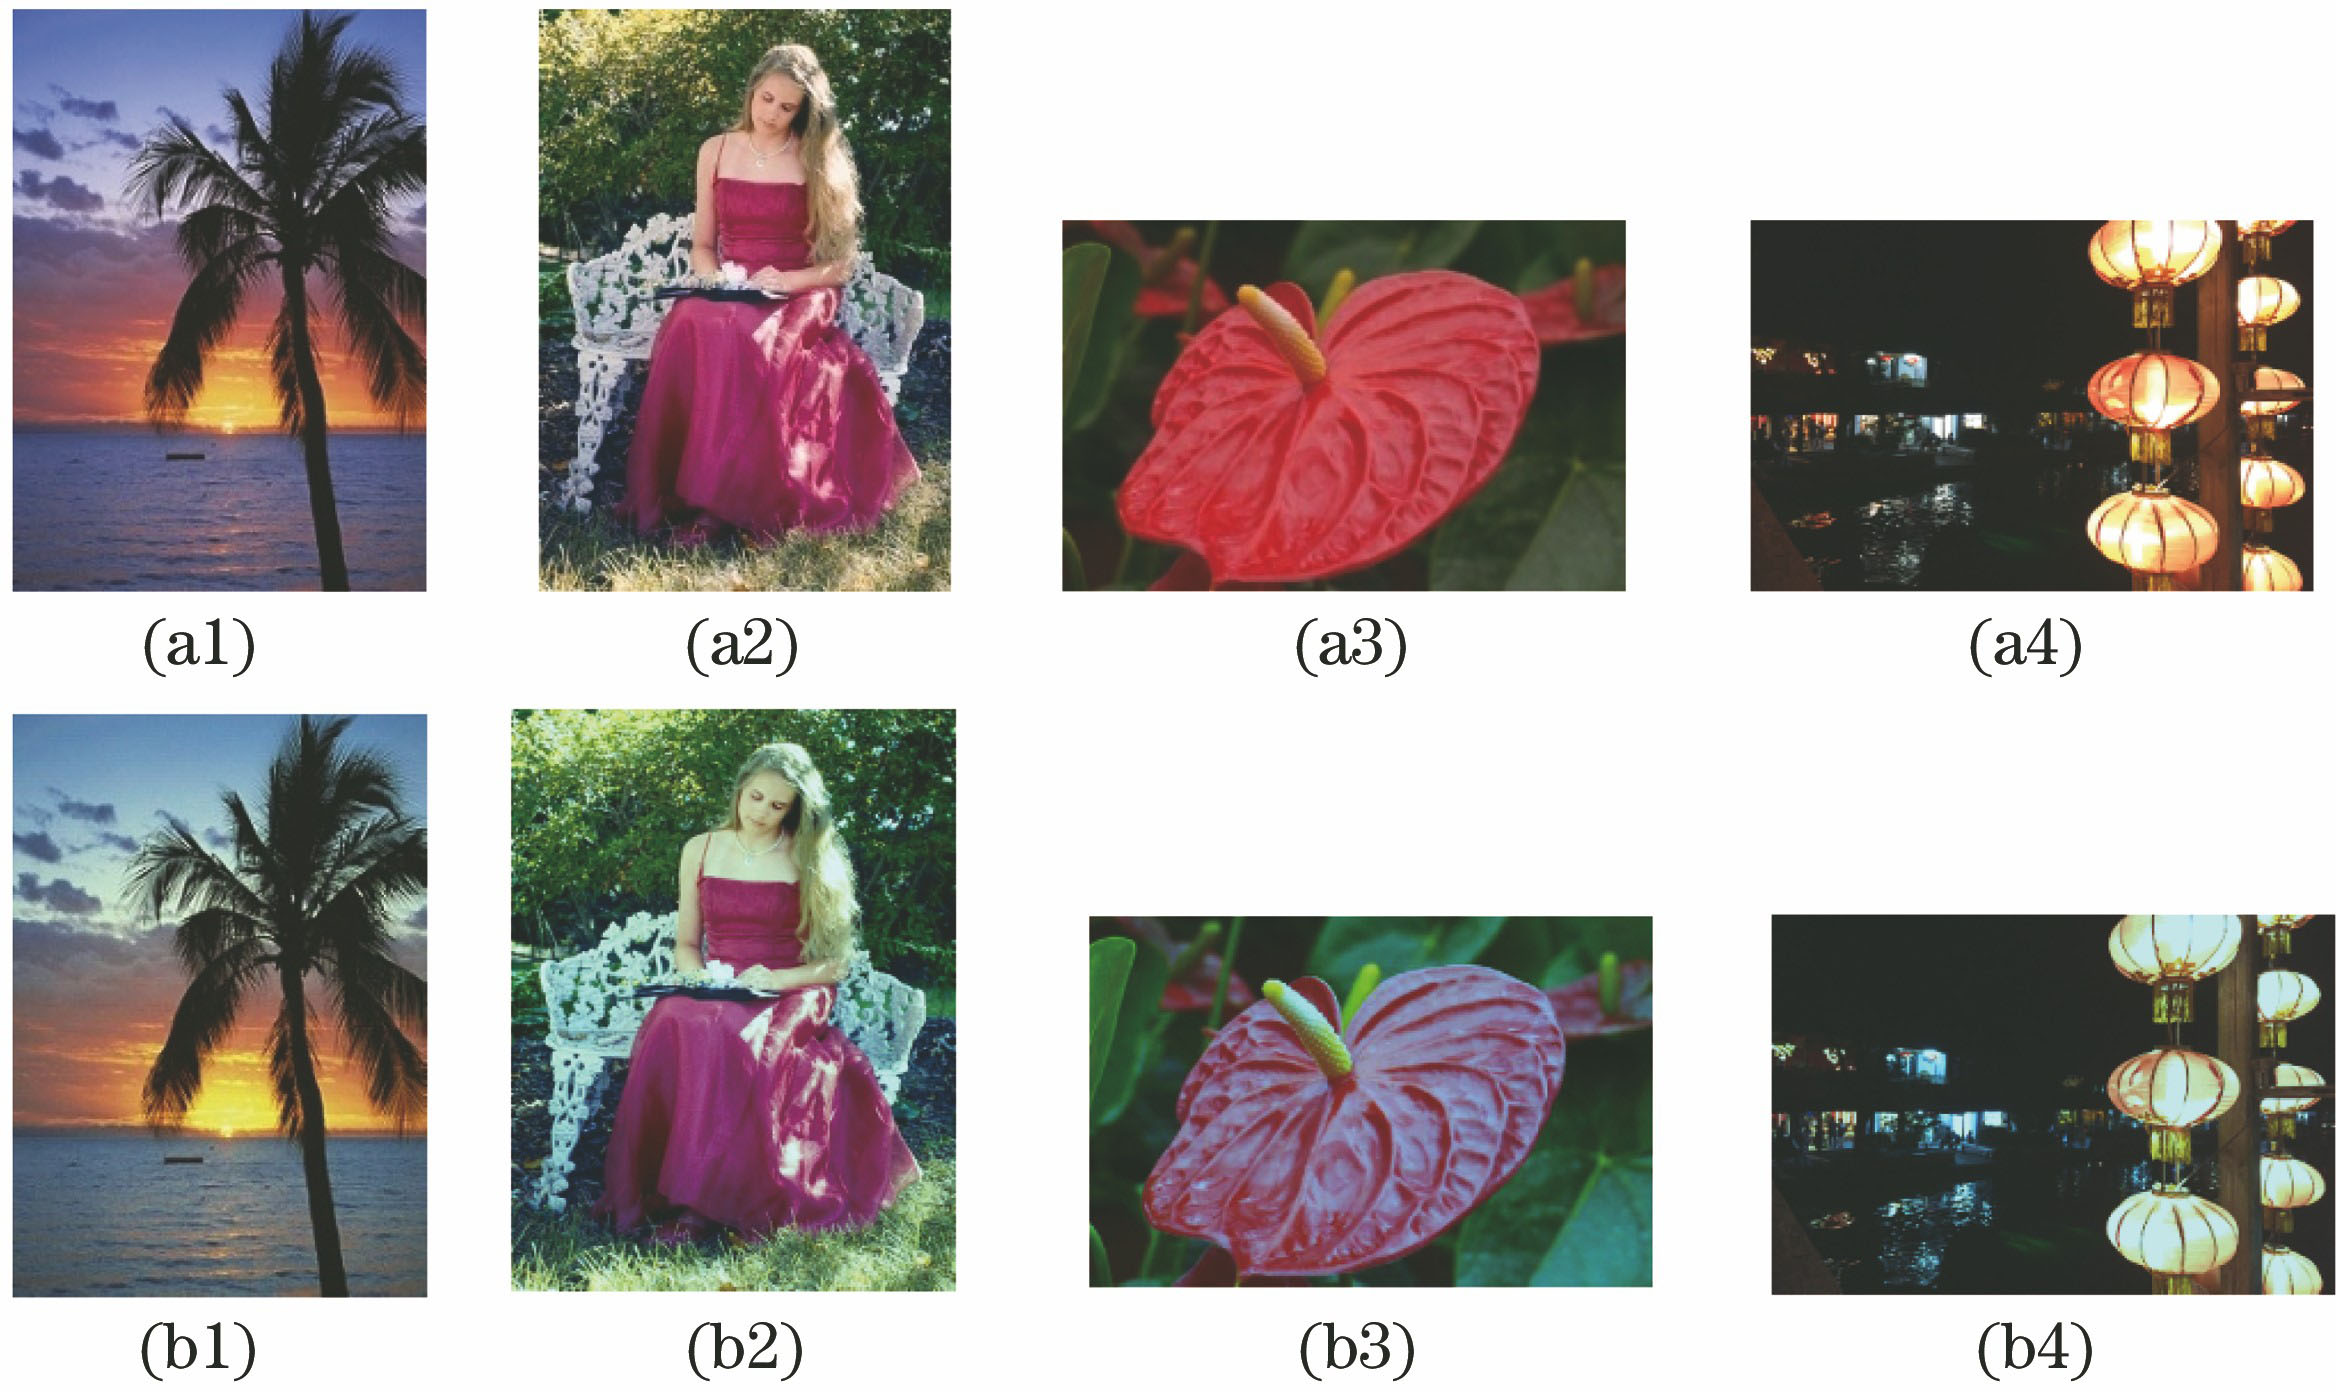 Image comparison. (a) Original image; (b) image after color constancy processing